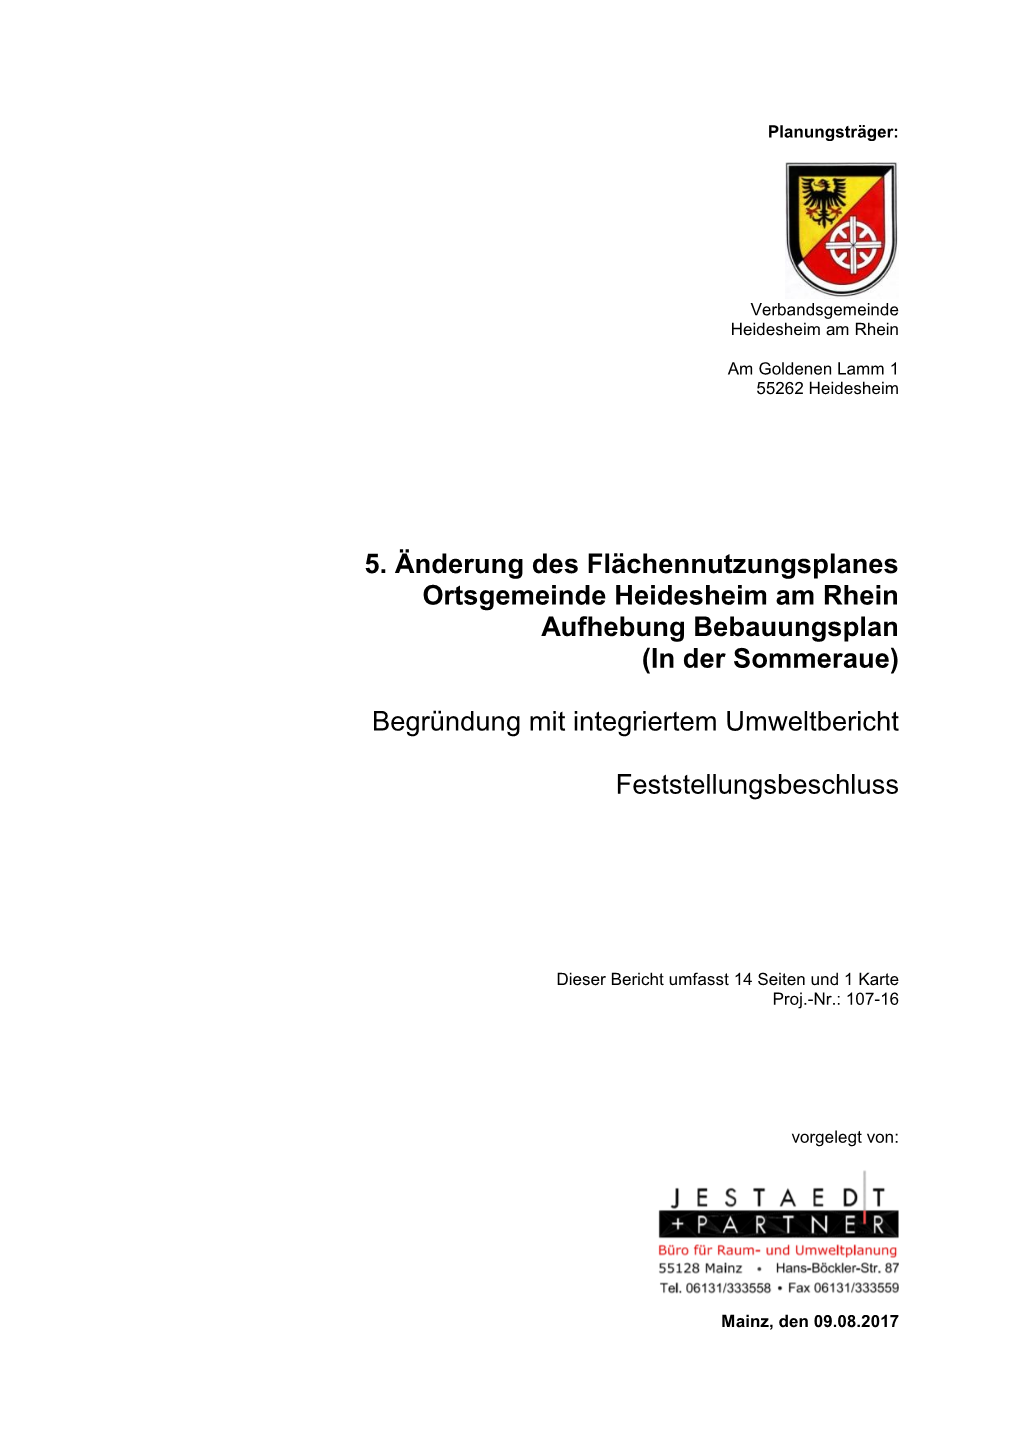 5. Änderung Des Flächennutzungsplanes Ortsgemeinde Heidesheim Am Rhein Aufhebung Bebauungsplan (In Der Sommeraue) Begründung